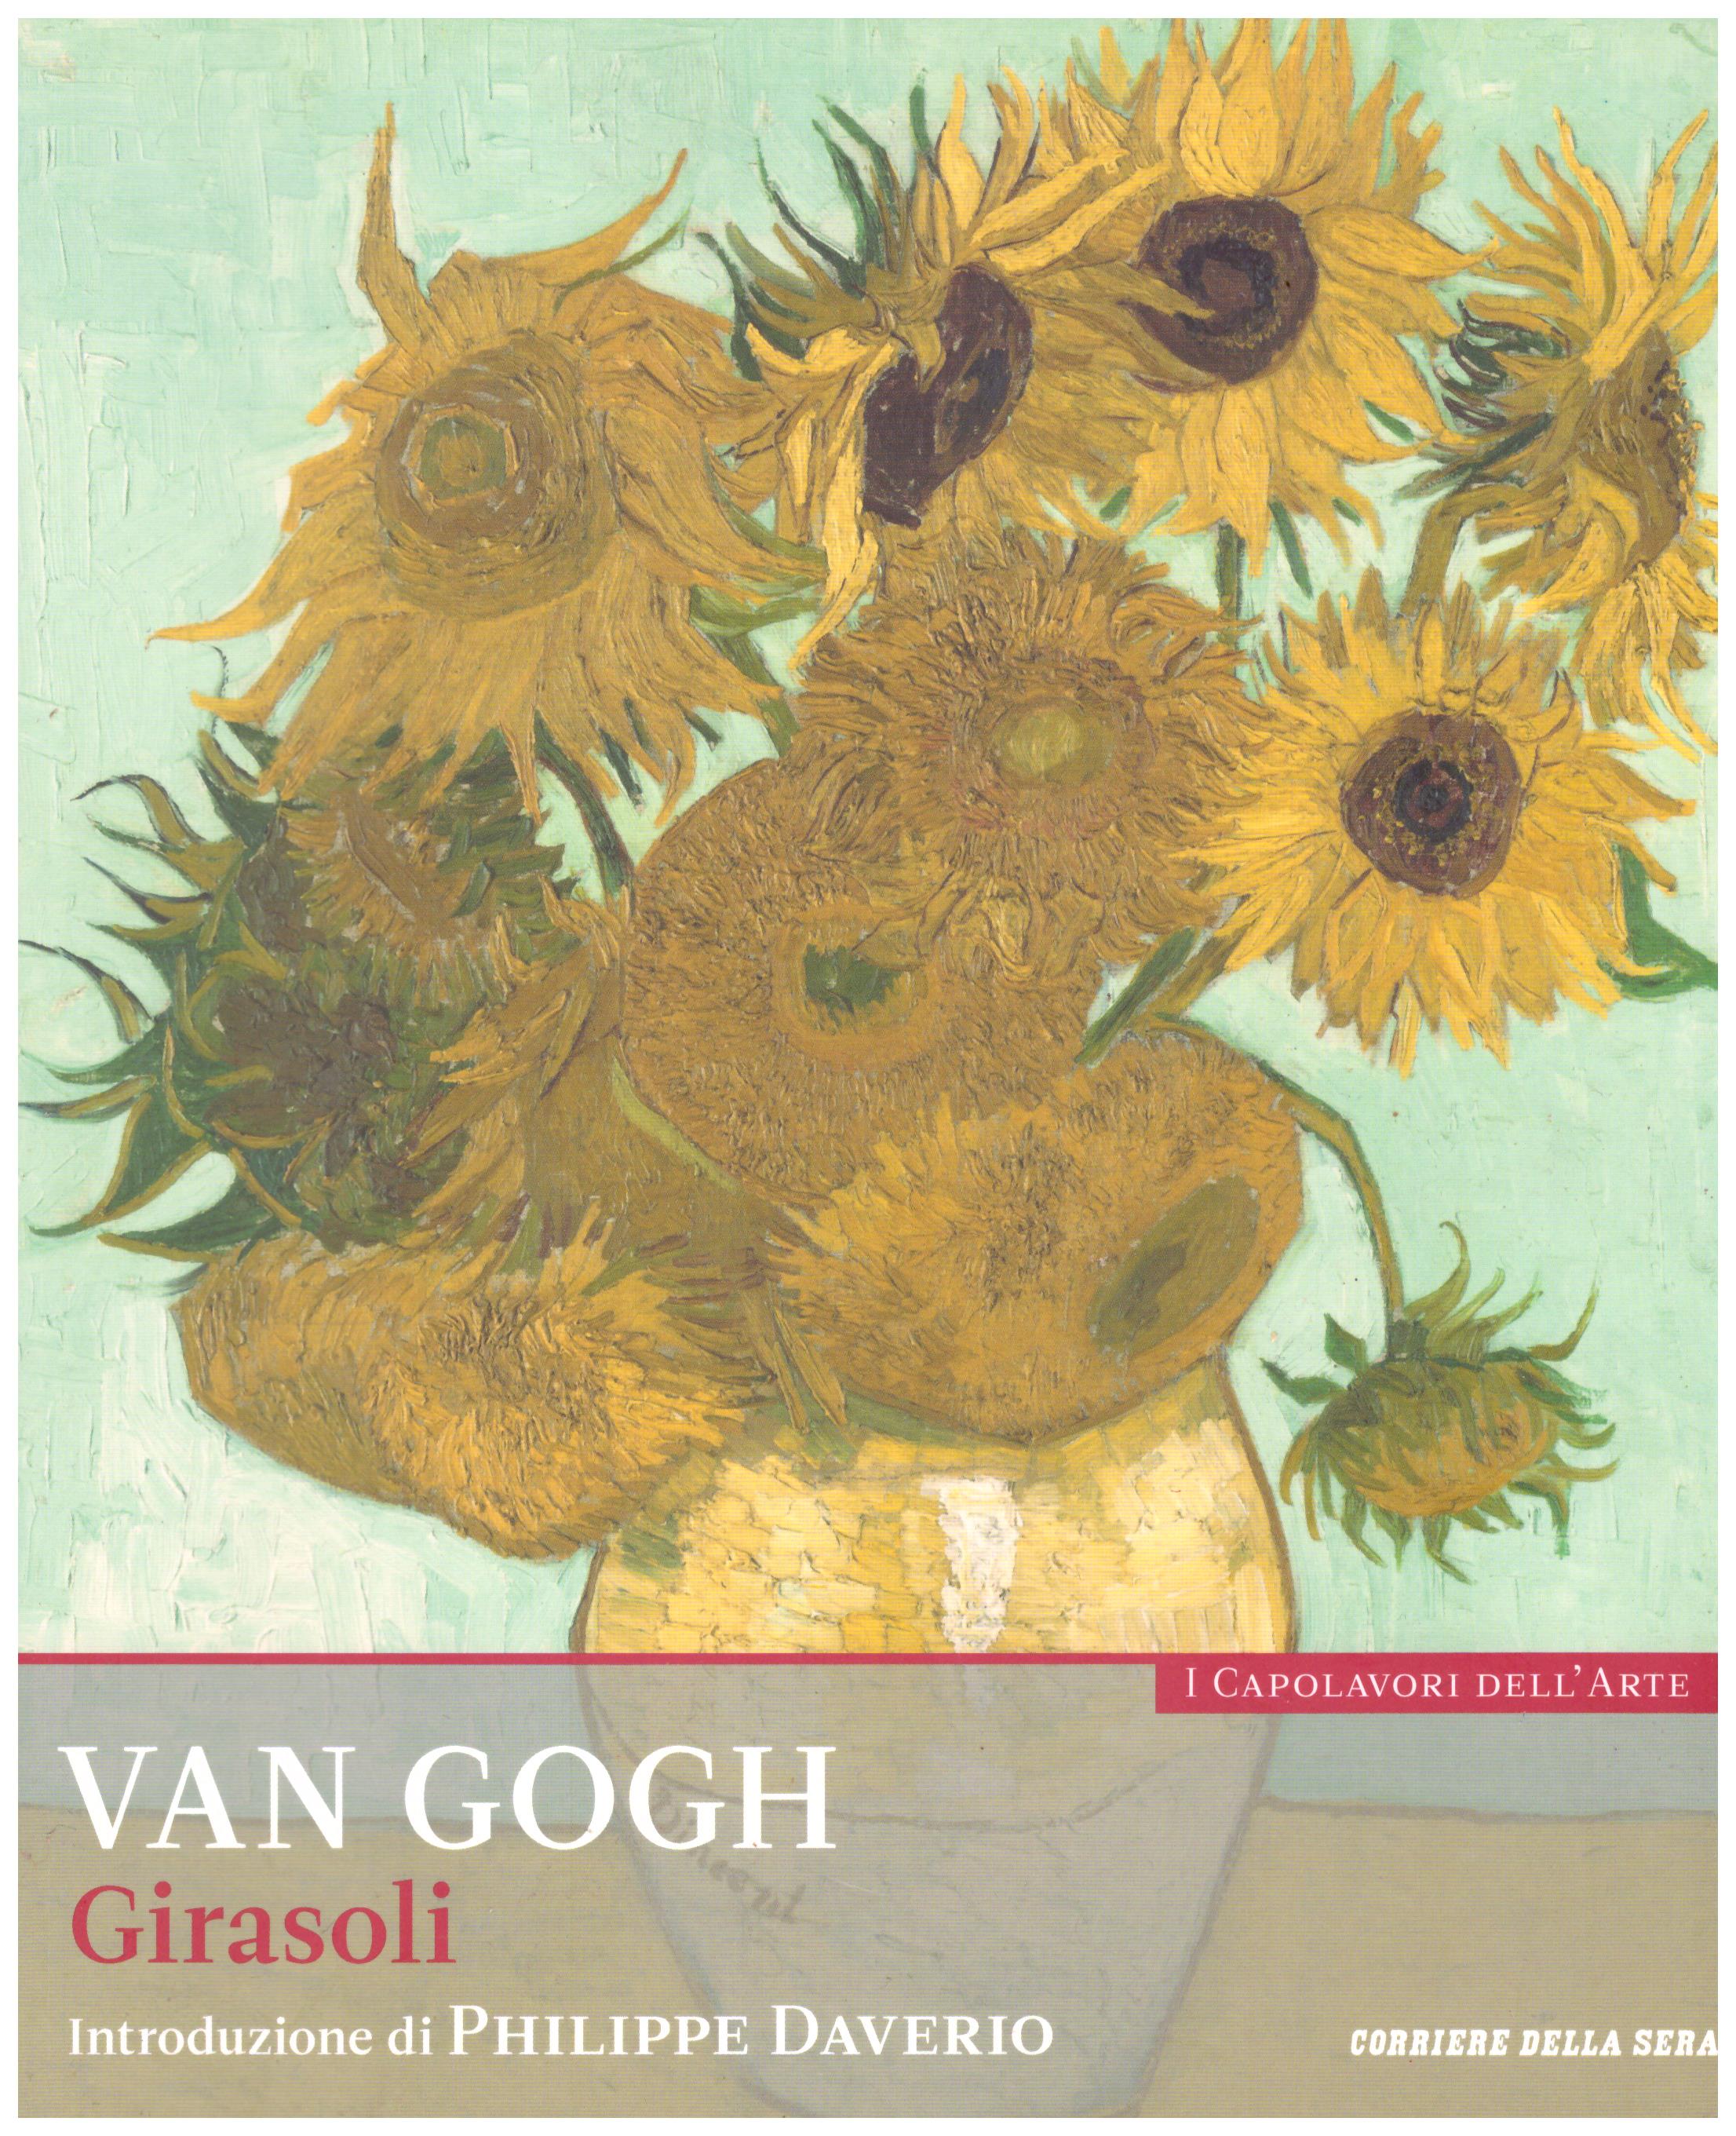 Titolo: I capolavori dell'arte, Van Gogh n.5  Autore : AA.VV.   Editore: education,it/corriere della sera, 2015